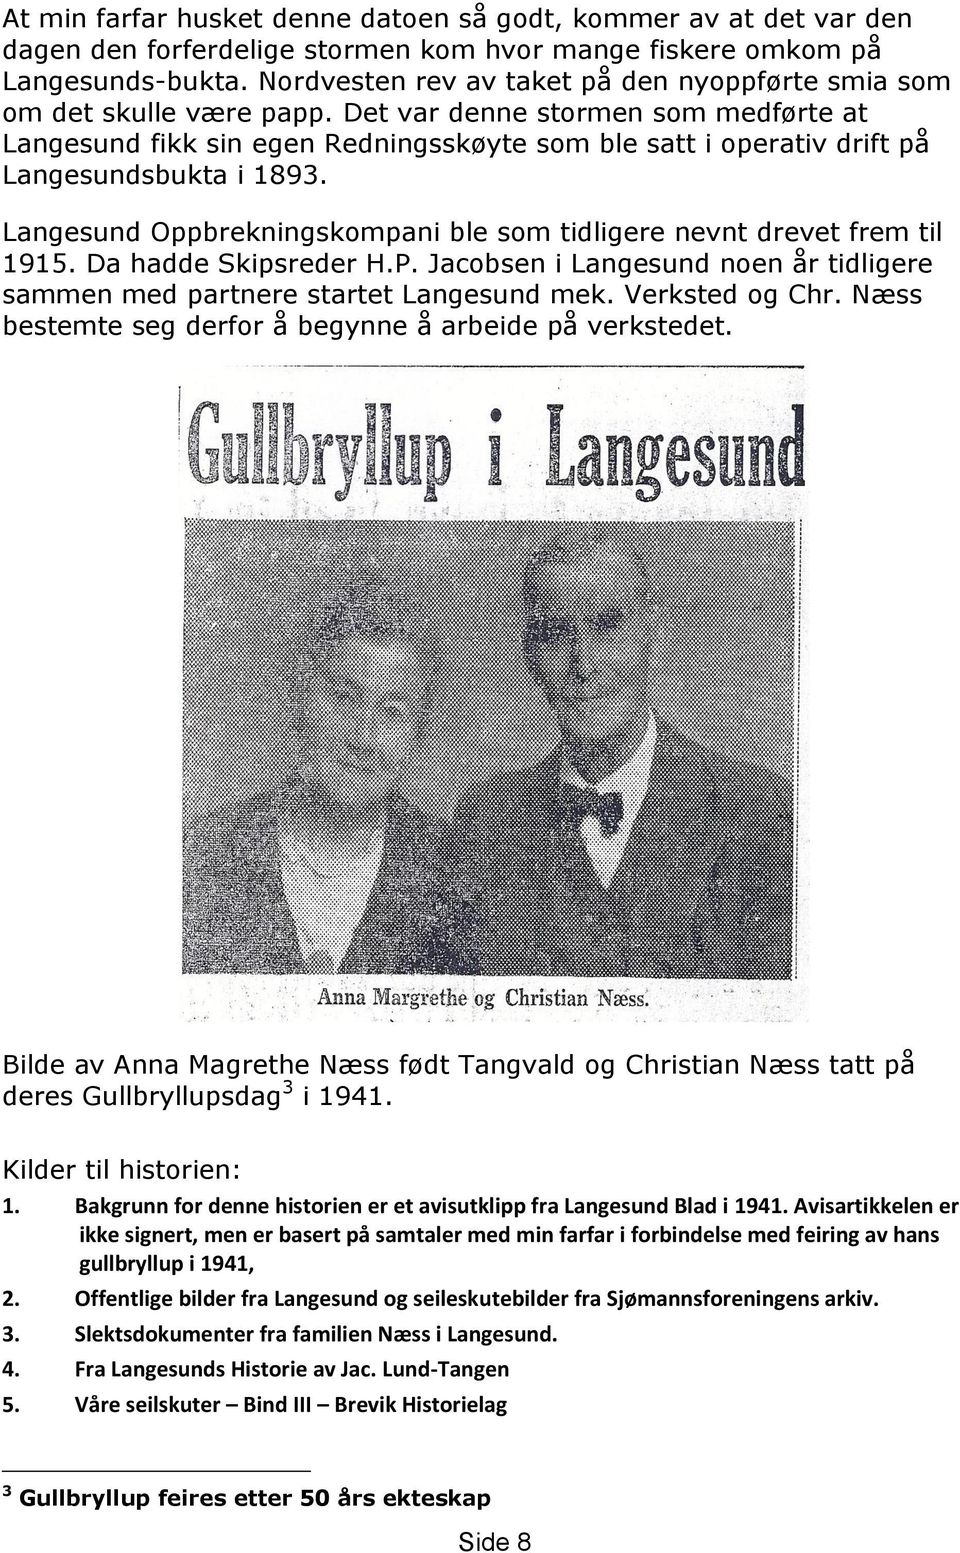 Det var denne stormen som medførte at Langesund fikk sin egen Redningsskøyte som ble satt i operativ drift på Langesundsbukta i 1893.